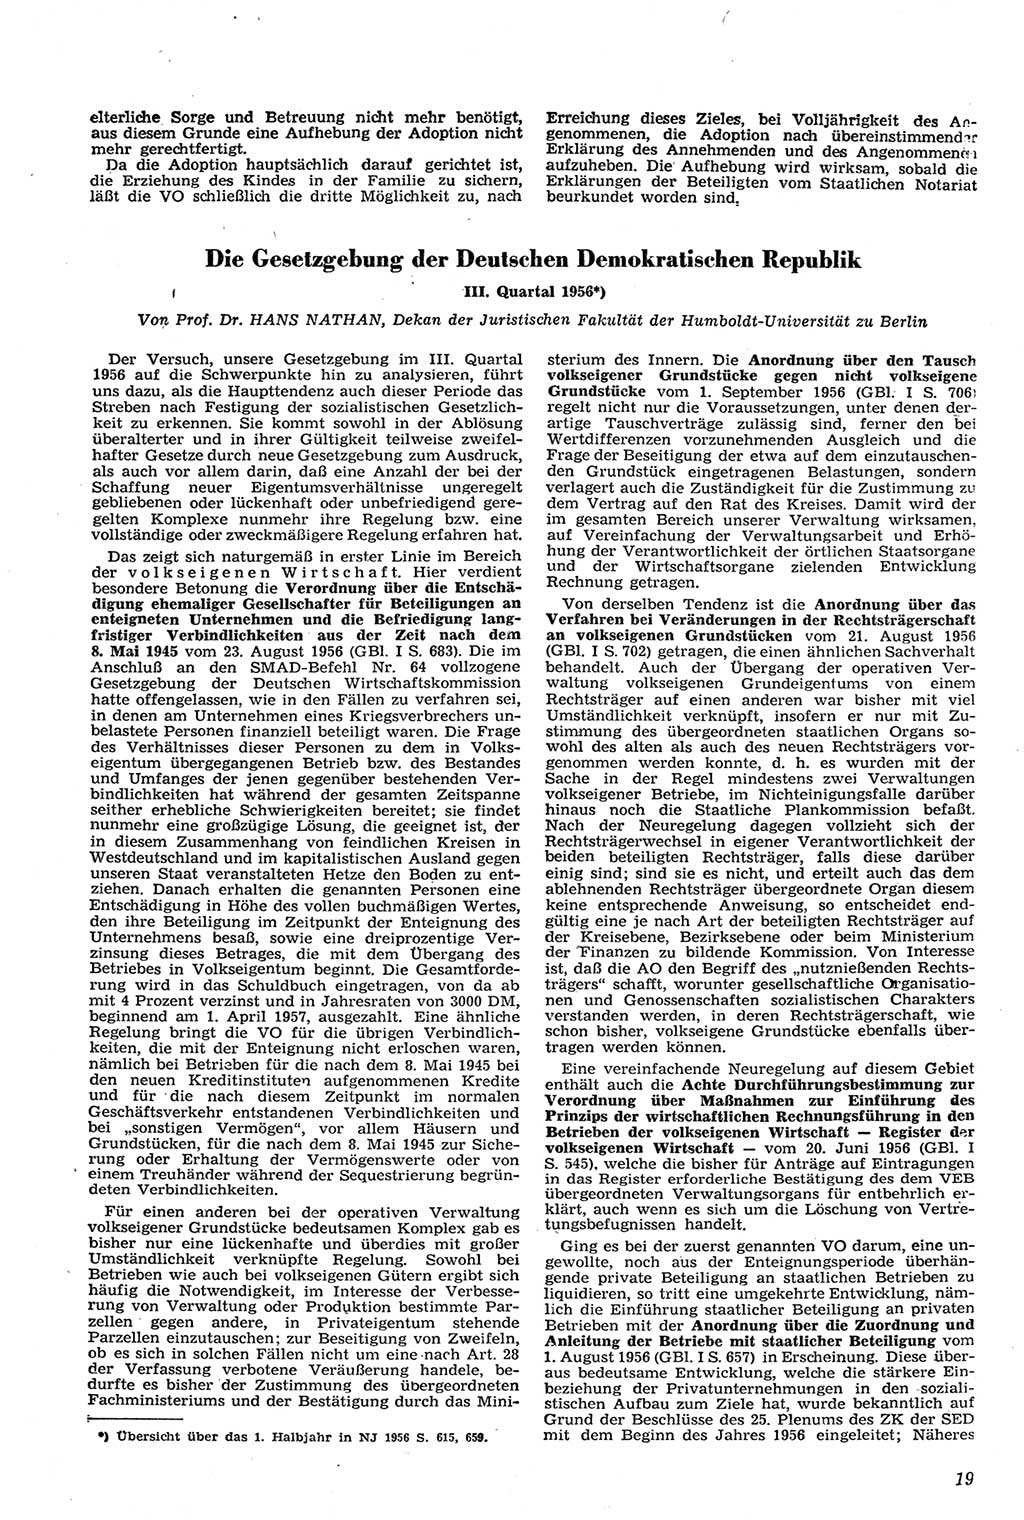 Neue Justiz (NJ), Zeitschrift für Recht und Rechtswissenschaft [Deutsche Demokratische Republik (DDR)], 11. Jahrgang 1957, Seite 19 (NJ DDR 1957, S. 19)